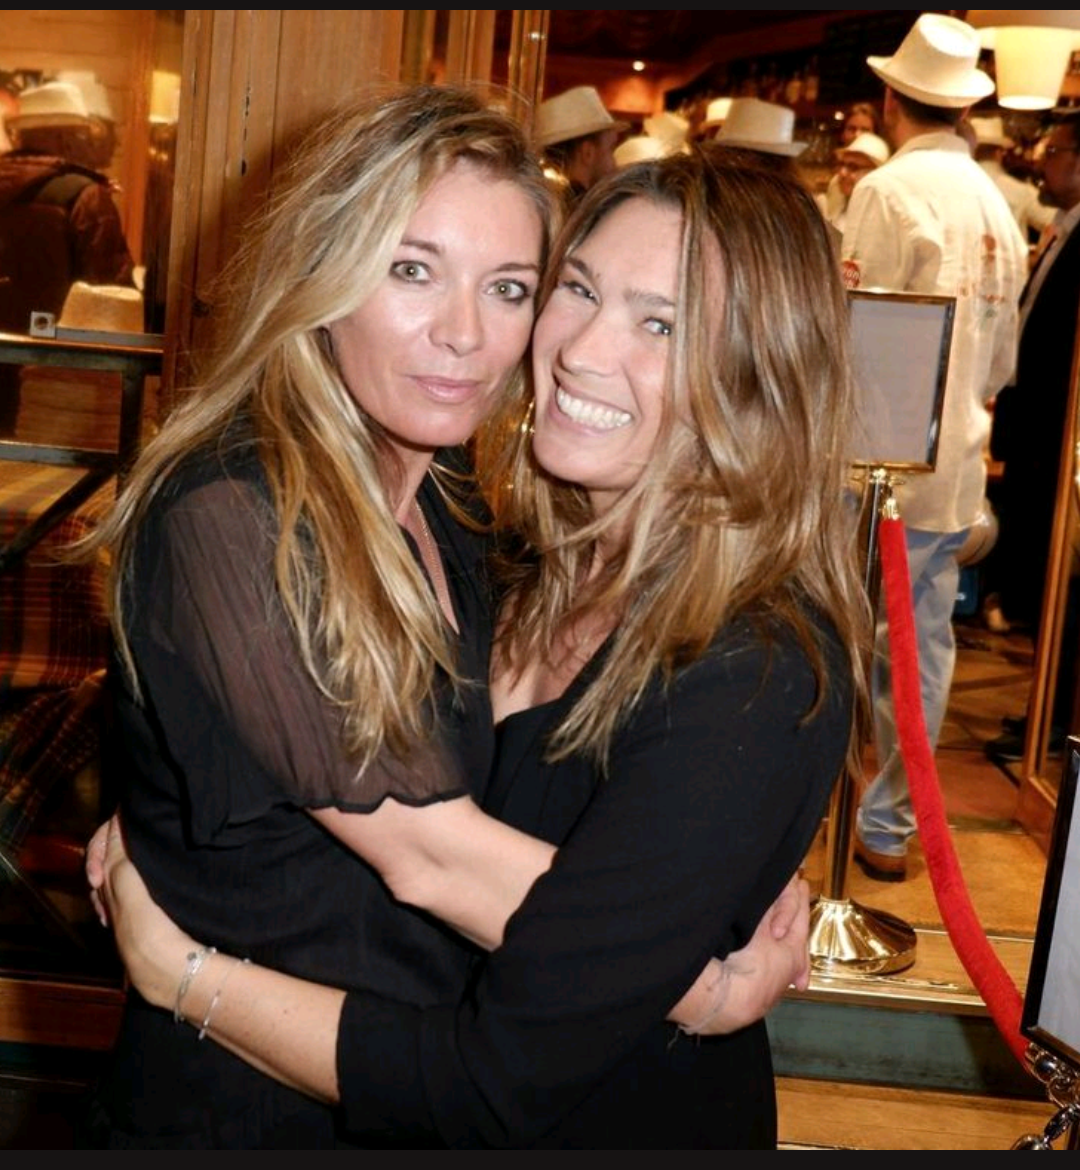 Tiffany et Sylvie parisienne fans de la Rhumerie